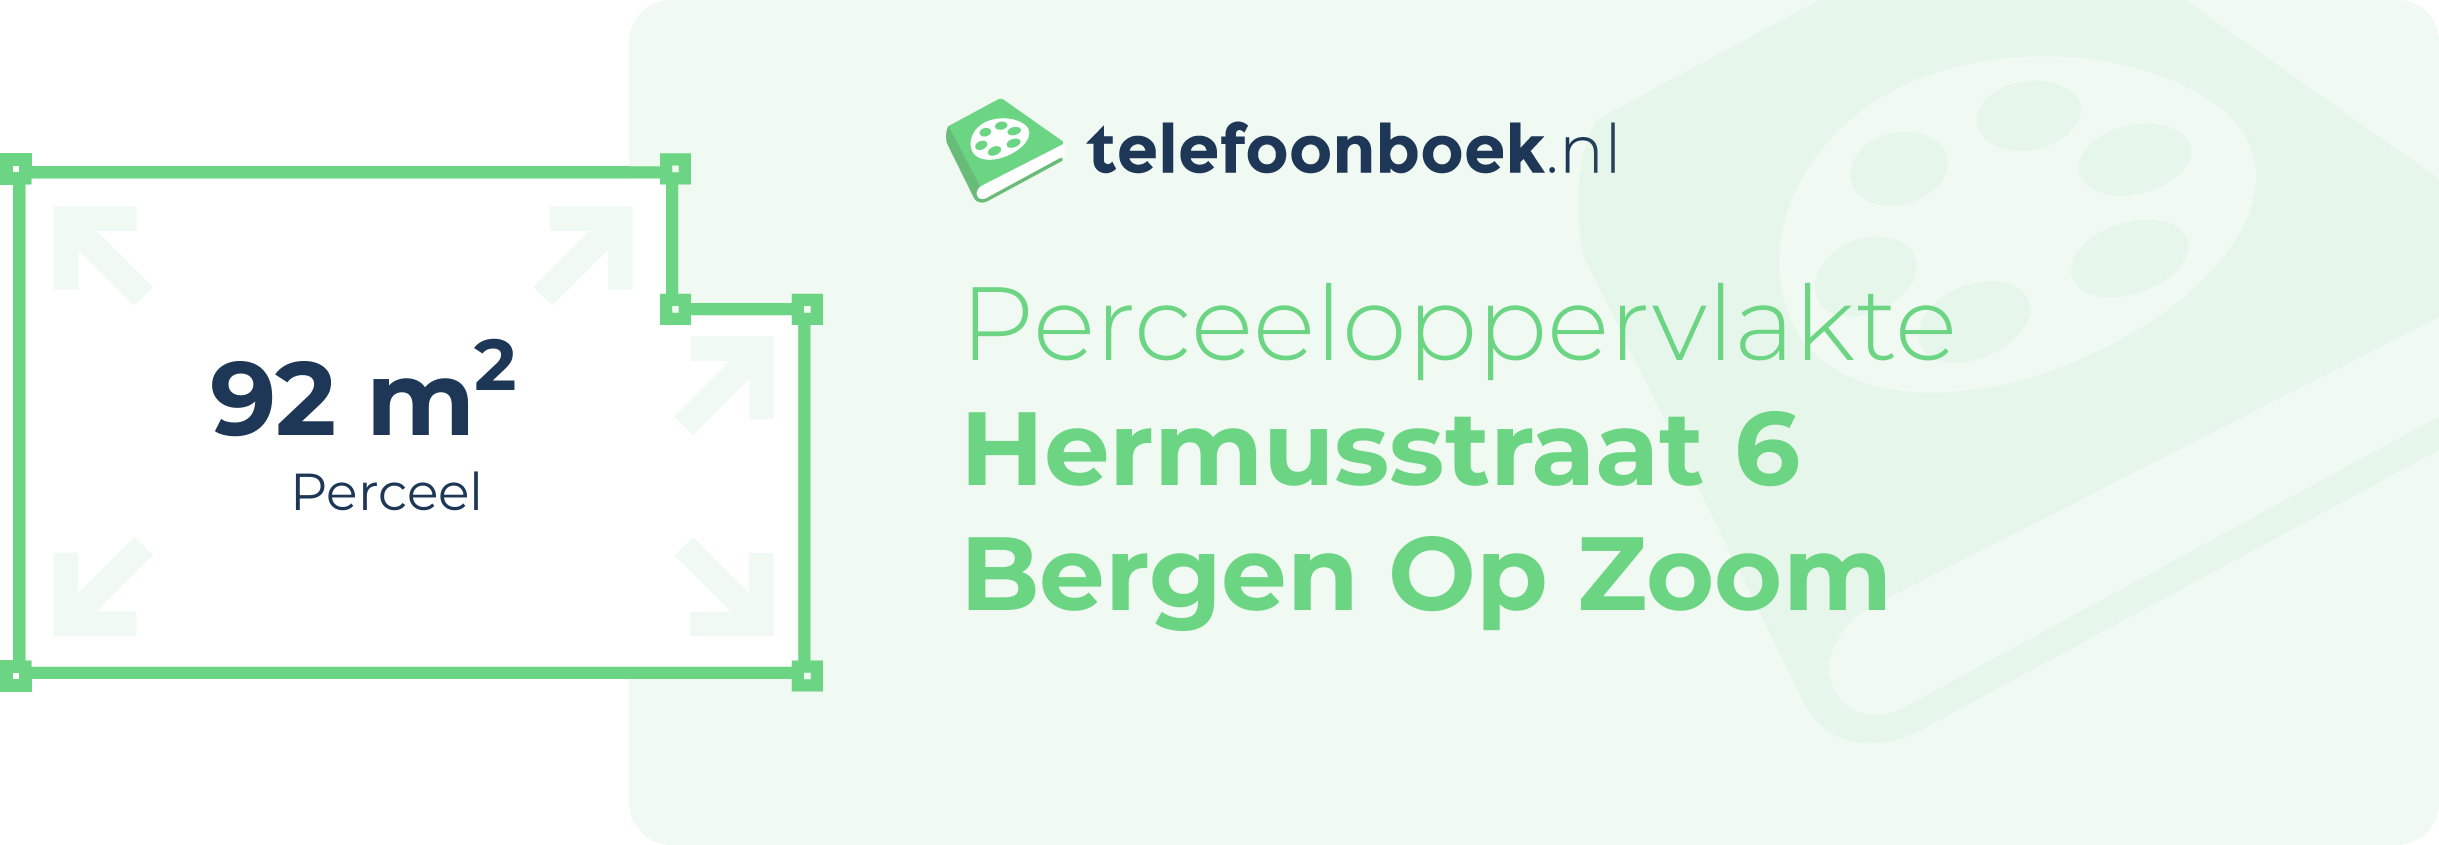 Perceeloppervlakte Hermusstraat 6 Bergen Op Zoom